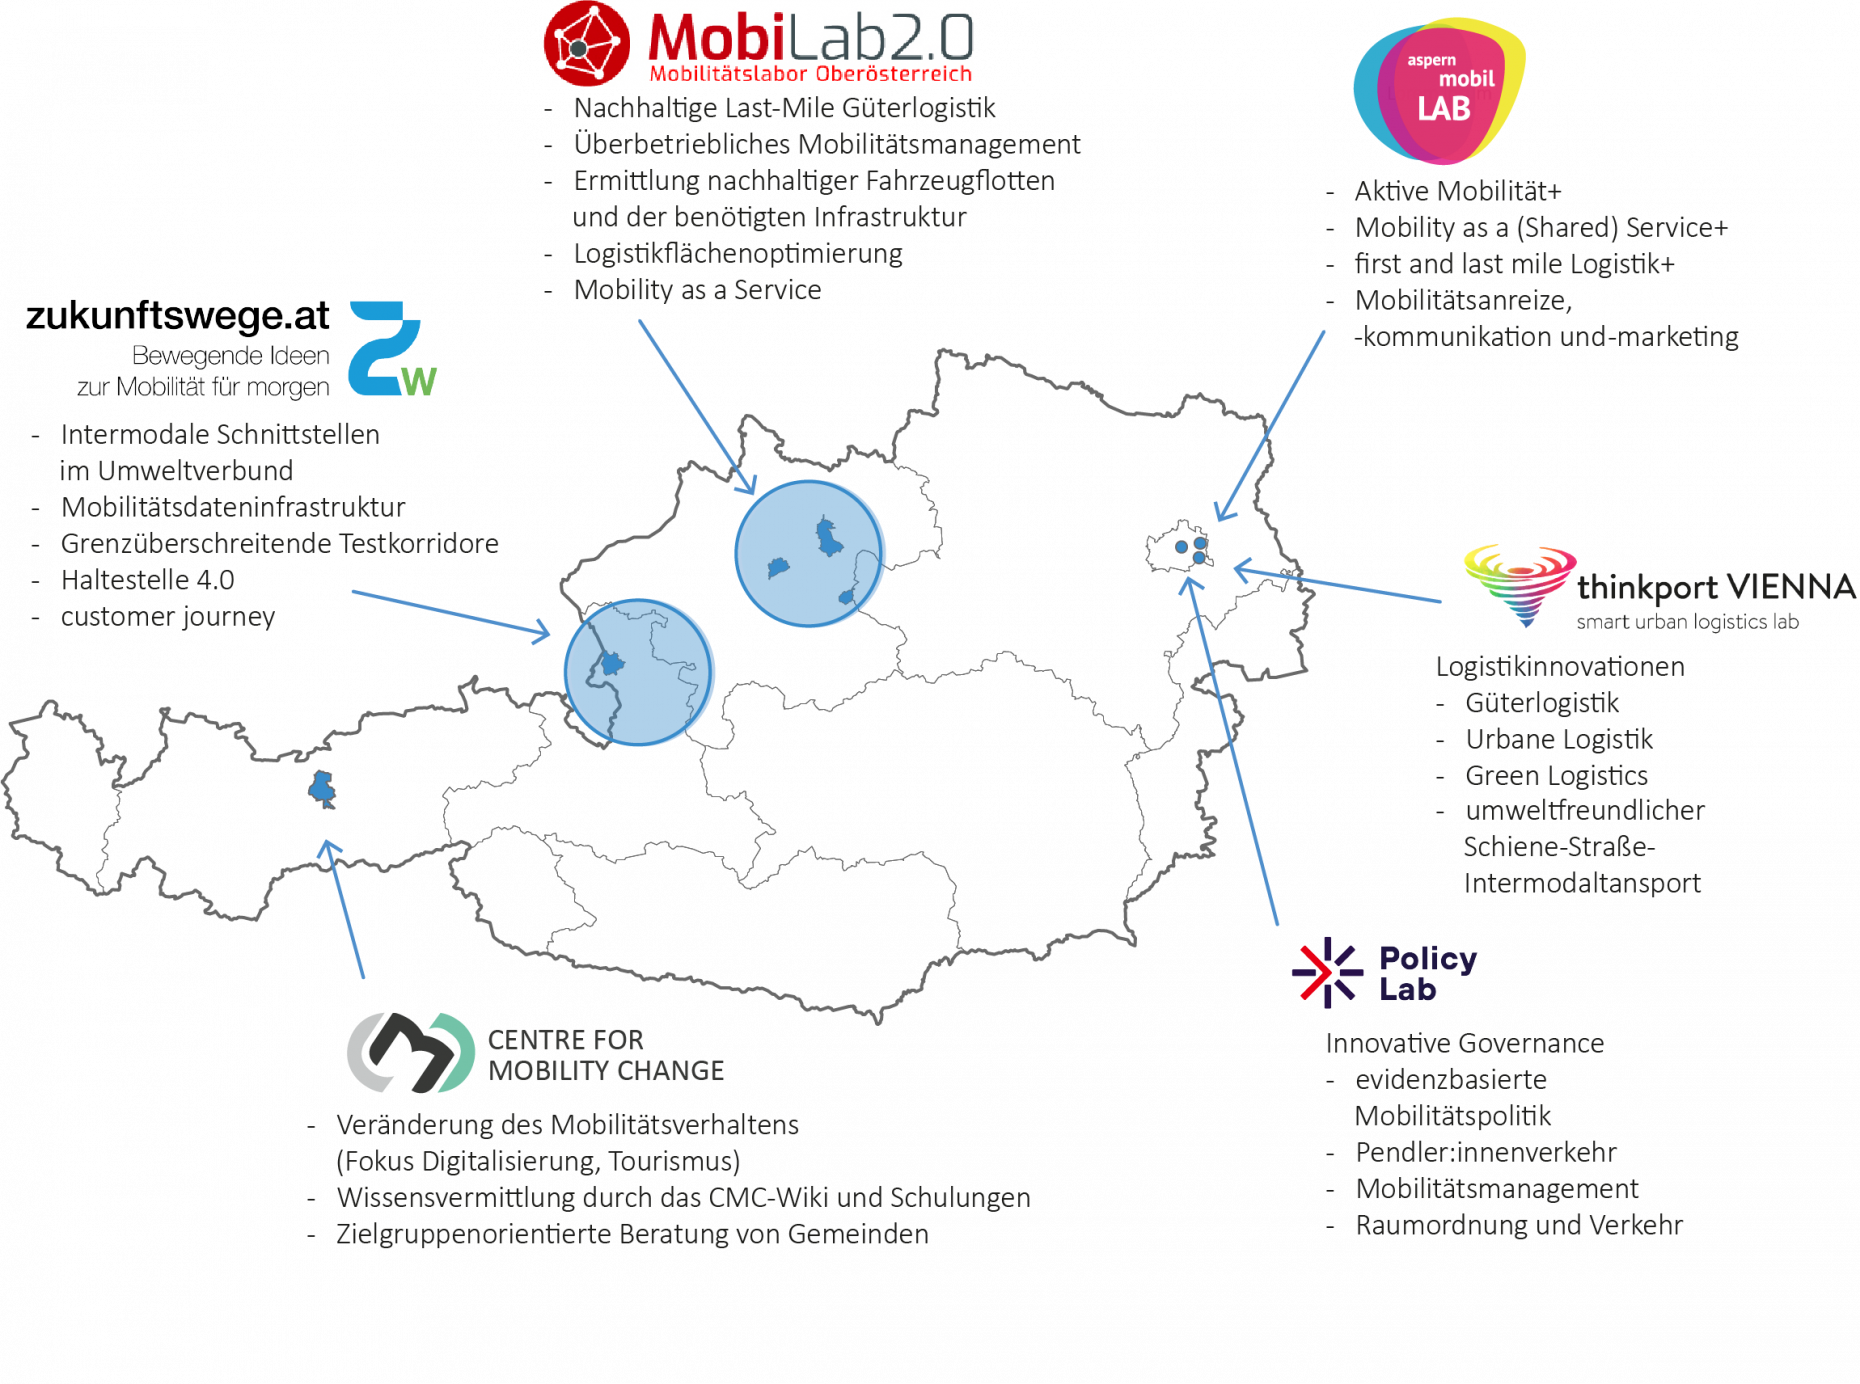 Das Bild zeigt eine Österreich Landkarte, in der die vier urbanen Mobilitätslabore, das Center for Mobility Change und das Policy Lab verortet sind. Außerdem werden die Themenschwerpunkte der einzelnen Mobilitätslabore beschrieben.